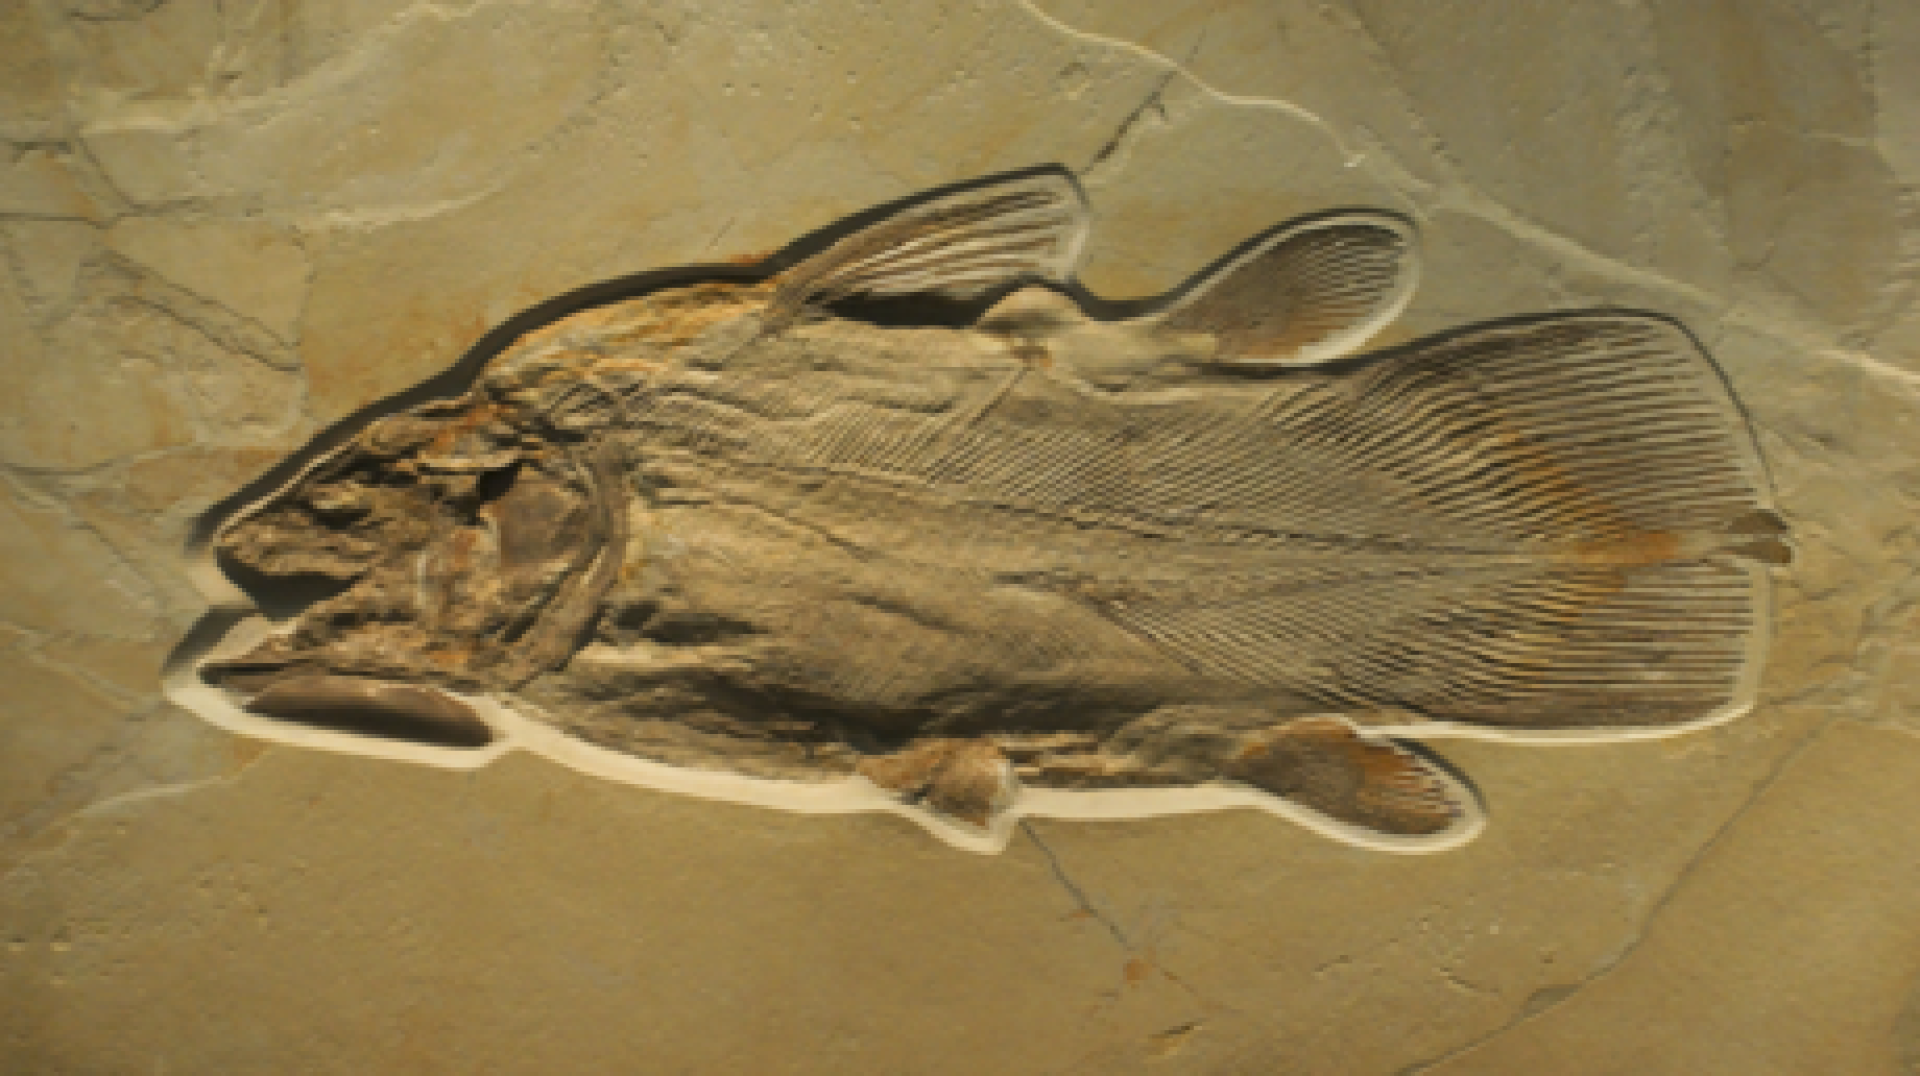 جمجمة سمكة قديمة تعود لـ 455 مليون سنة تكشف عن تشريح جديد للفقاريات